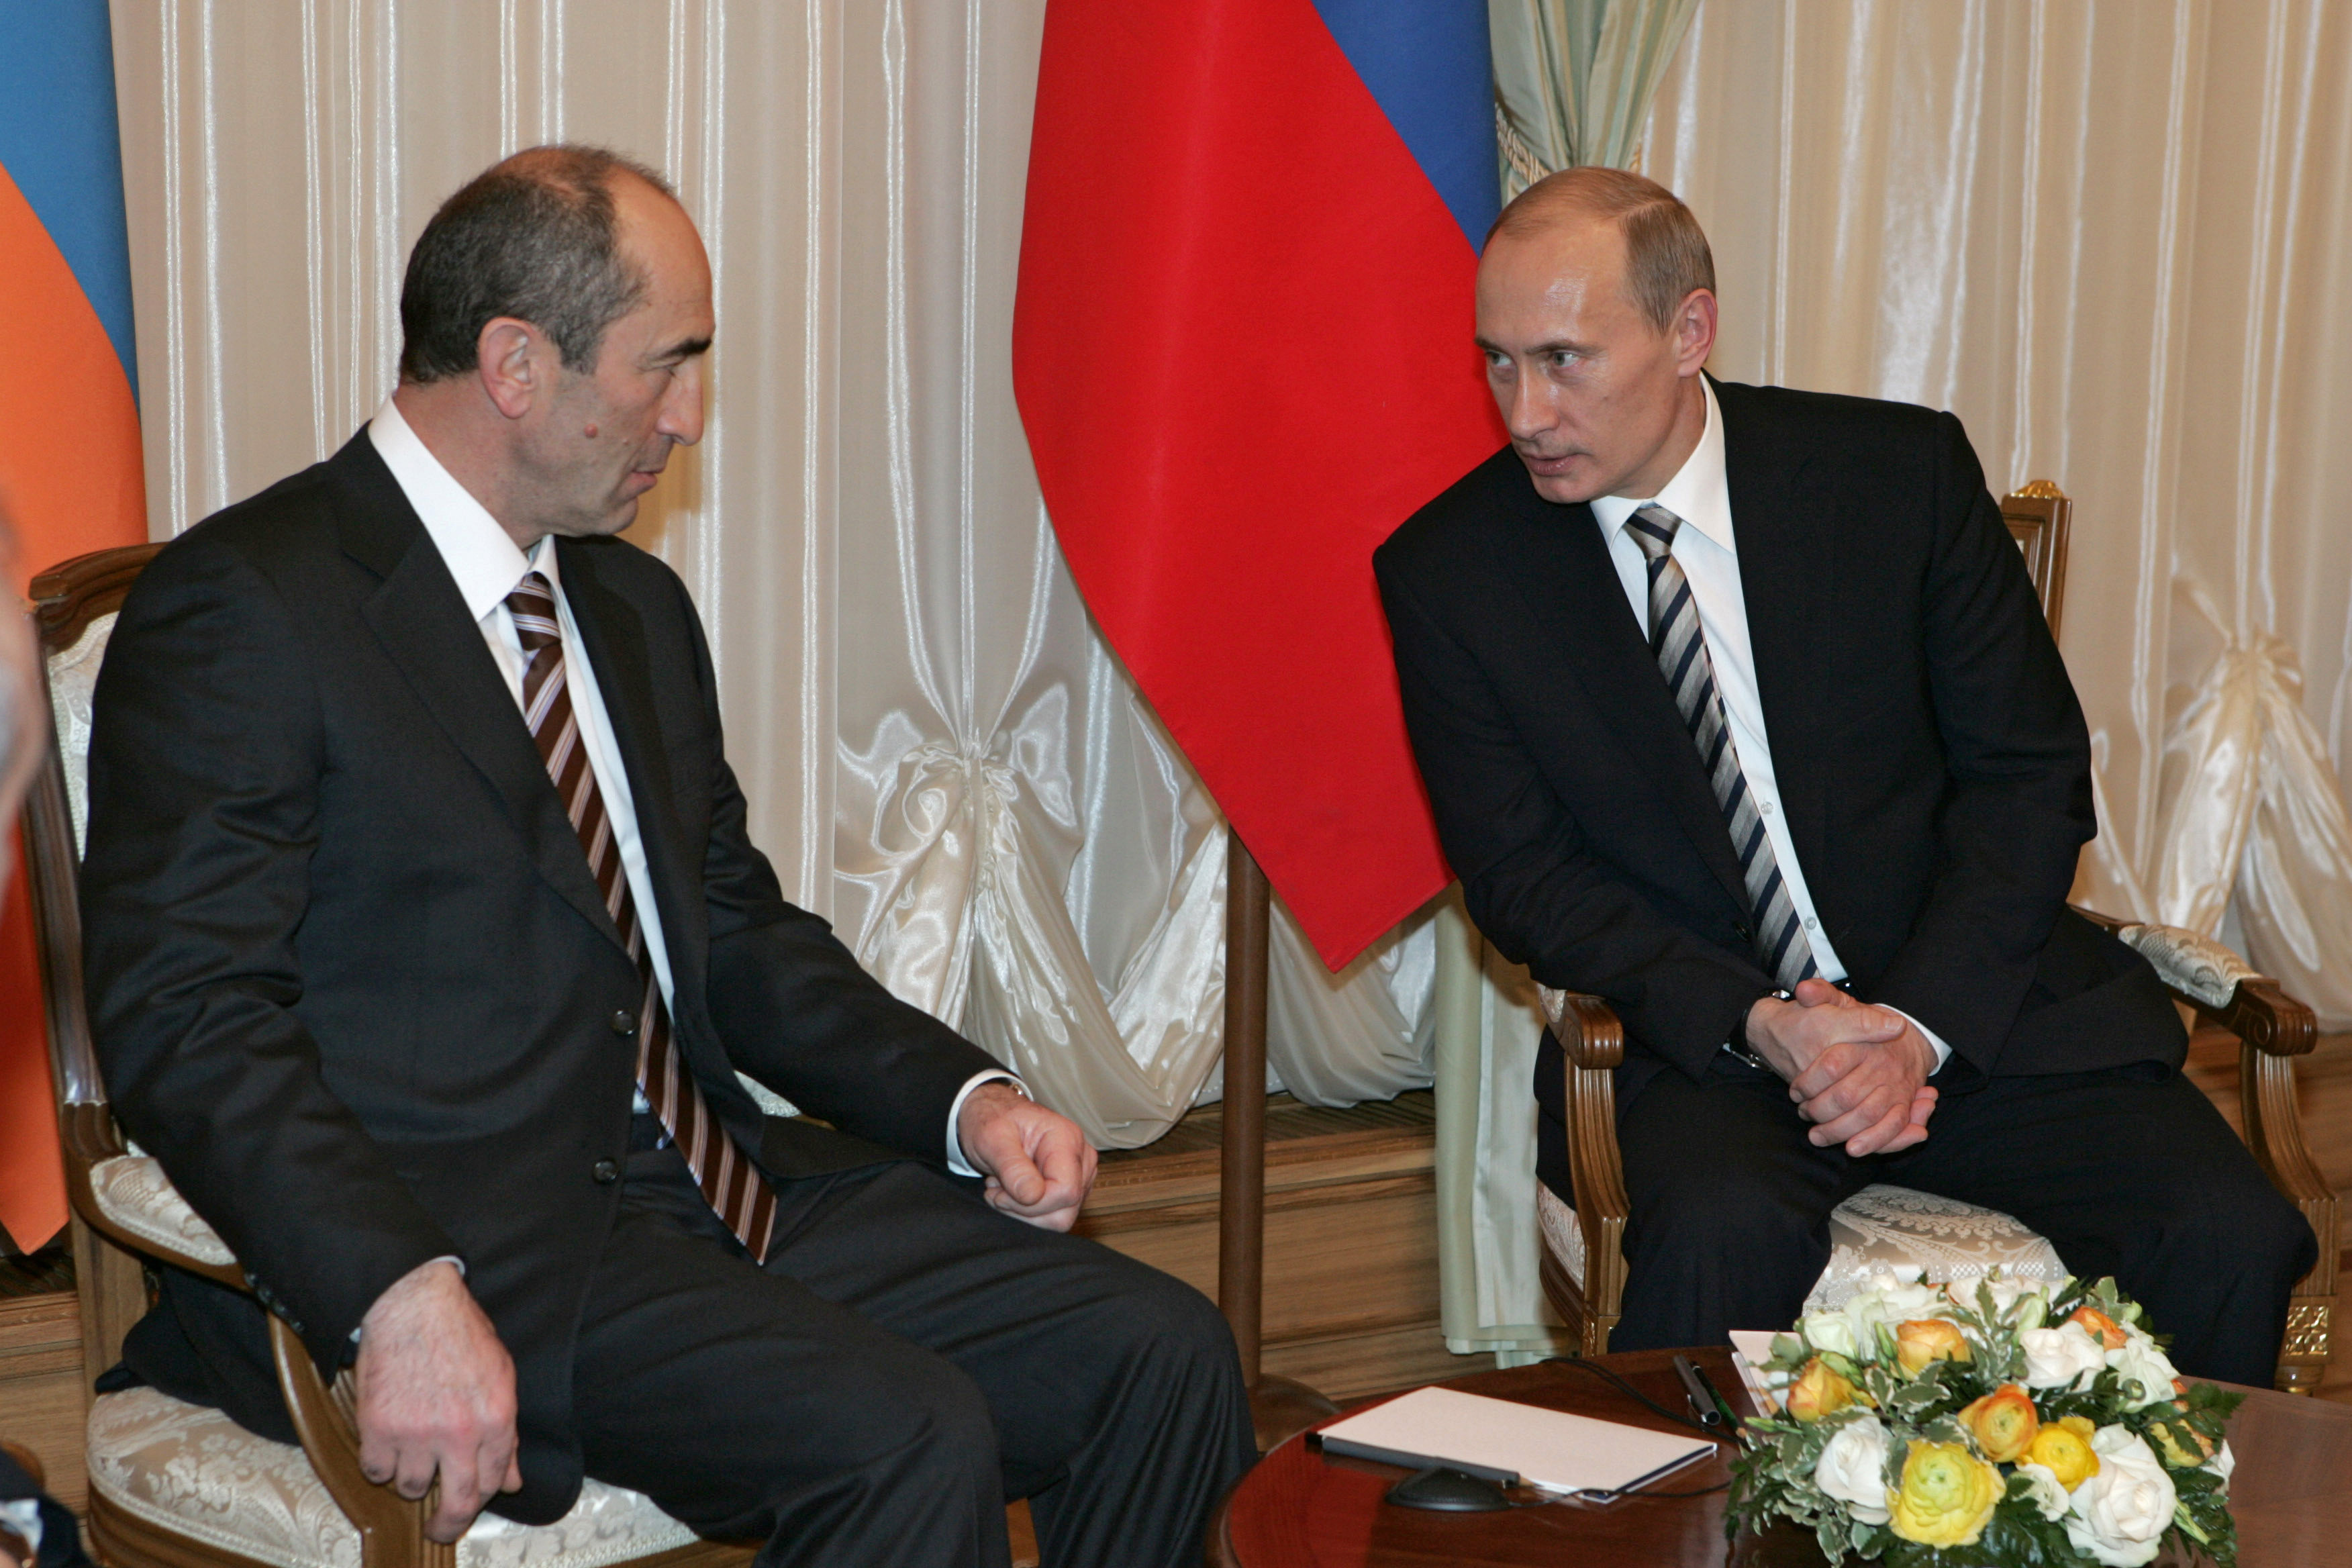 Роберт Кочарян и Владимир Путин (слева направо) во время встречи в Кремле в 2008 году. Фото: © РИА Новости/ Михаил Климентьев